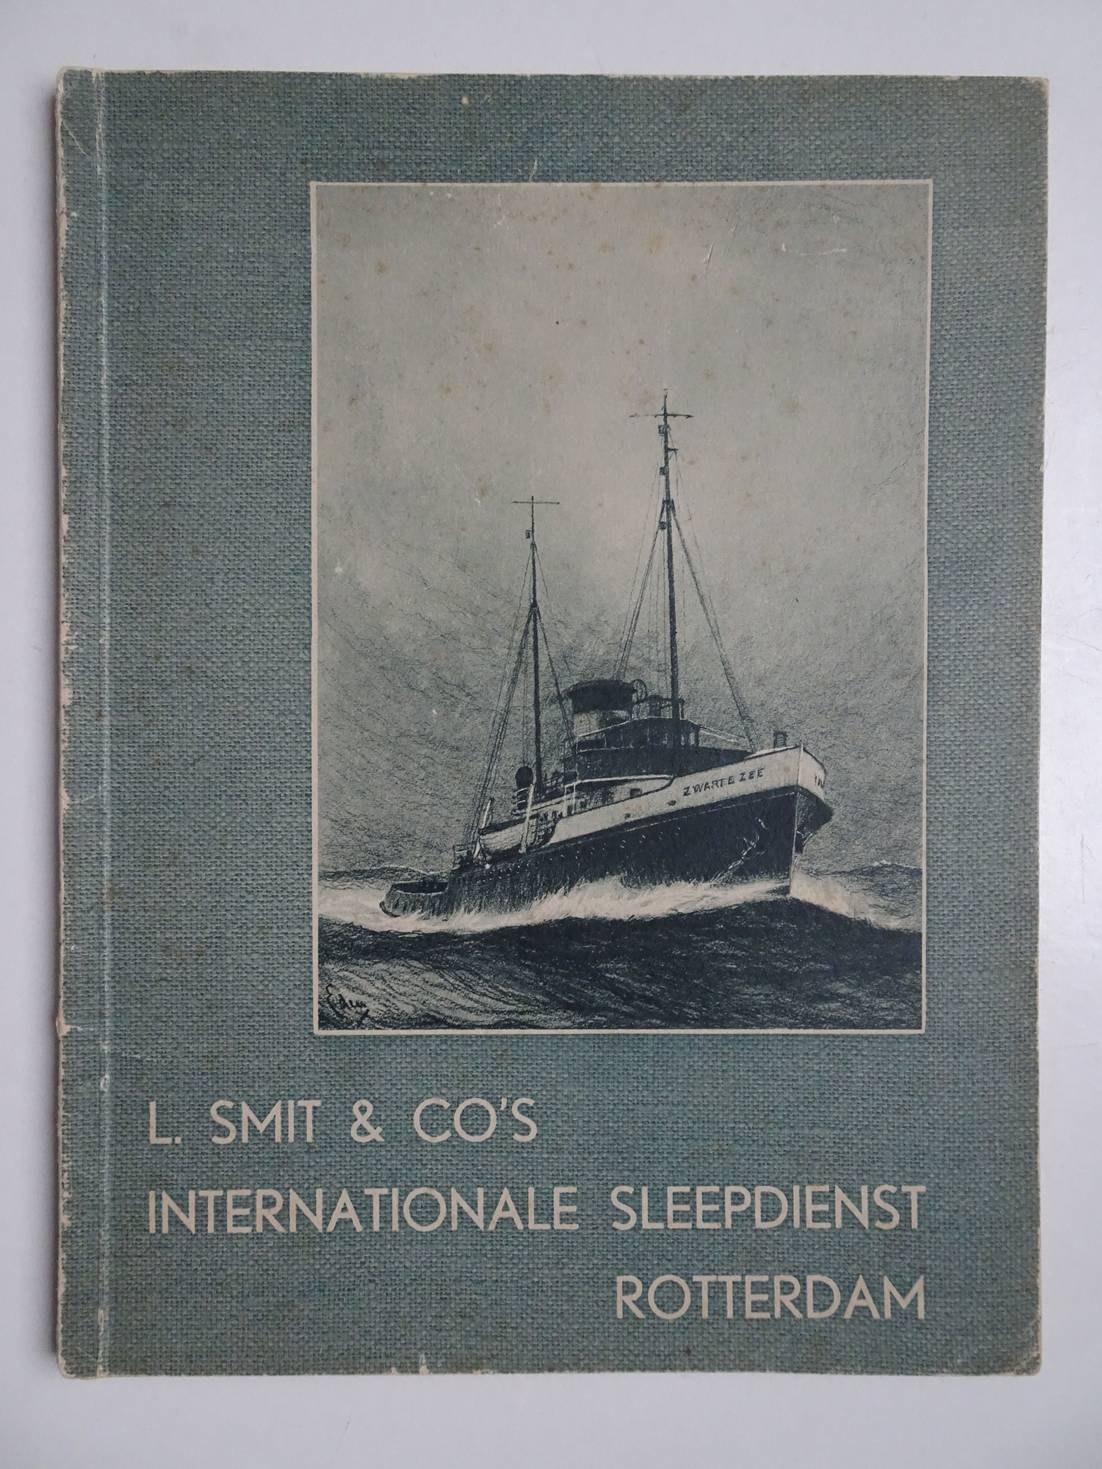 L. Smit & Co's Internationale Sleepdienst. - L. Smit & Co's Internationale Sleepdienst Rotterdam.